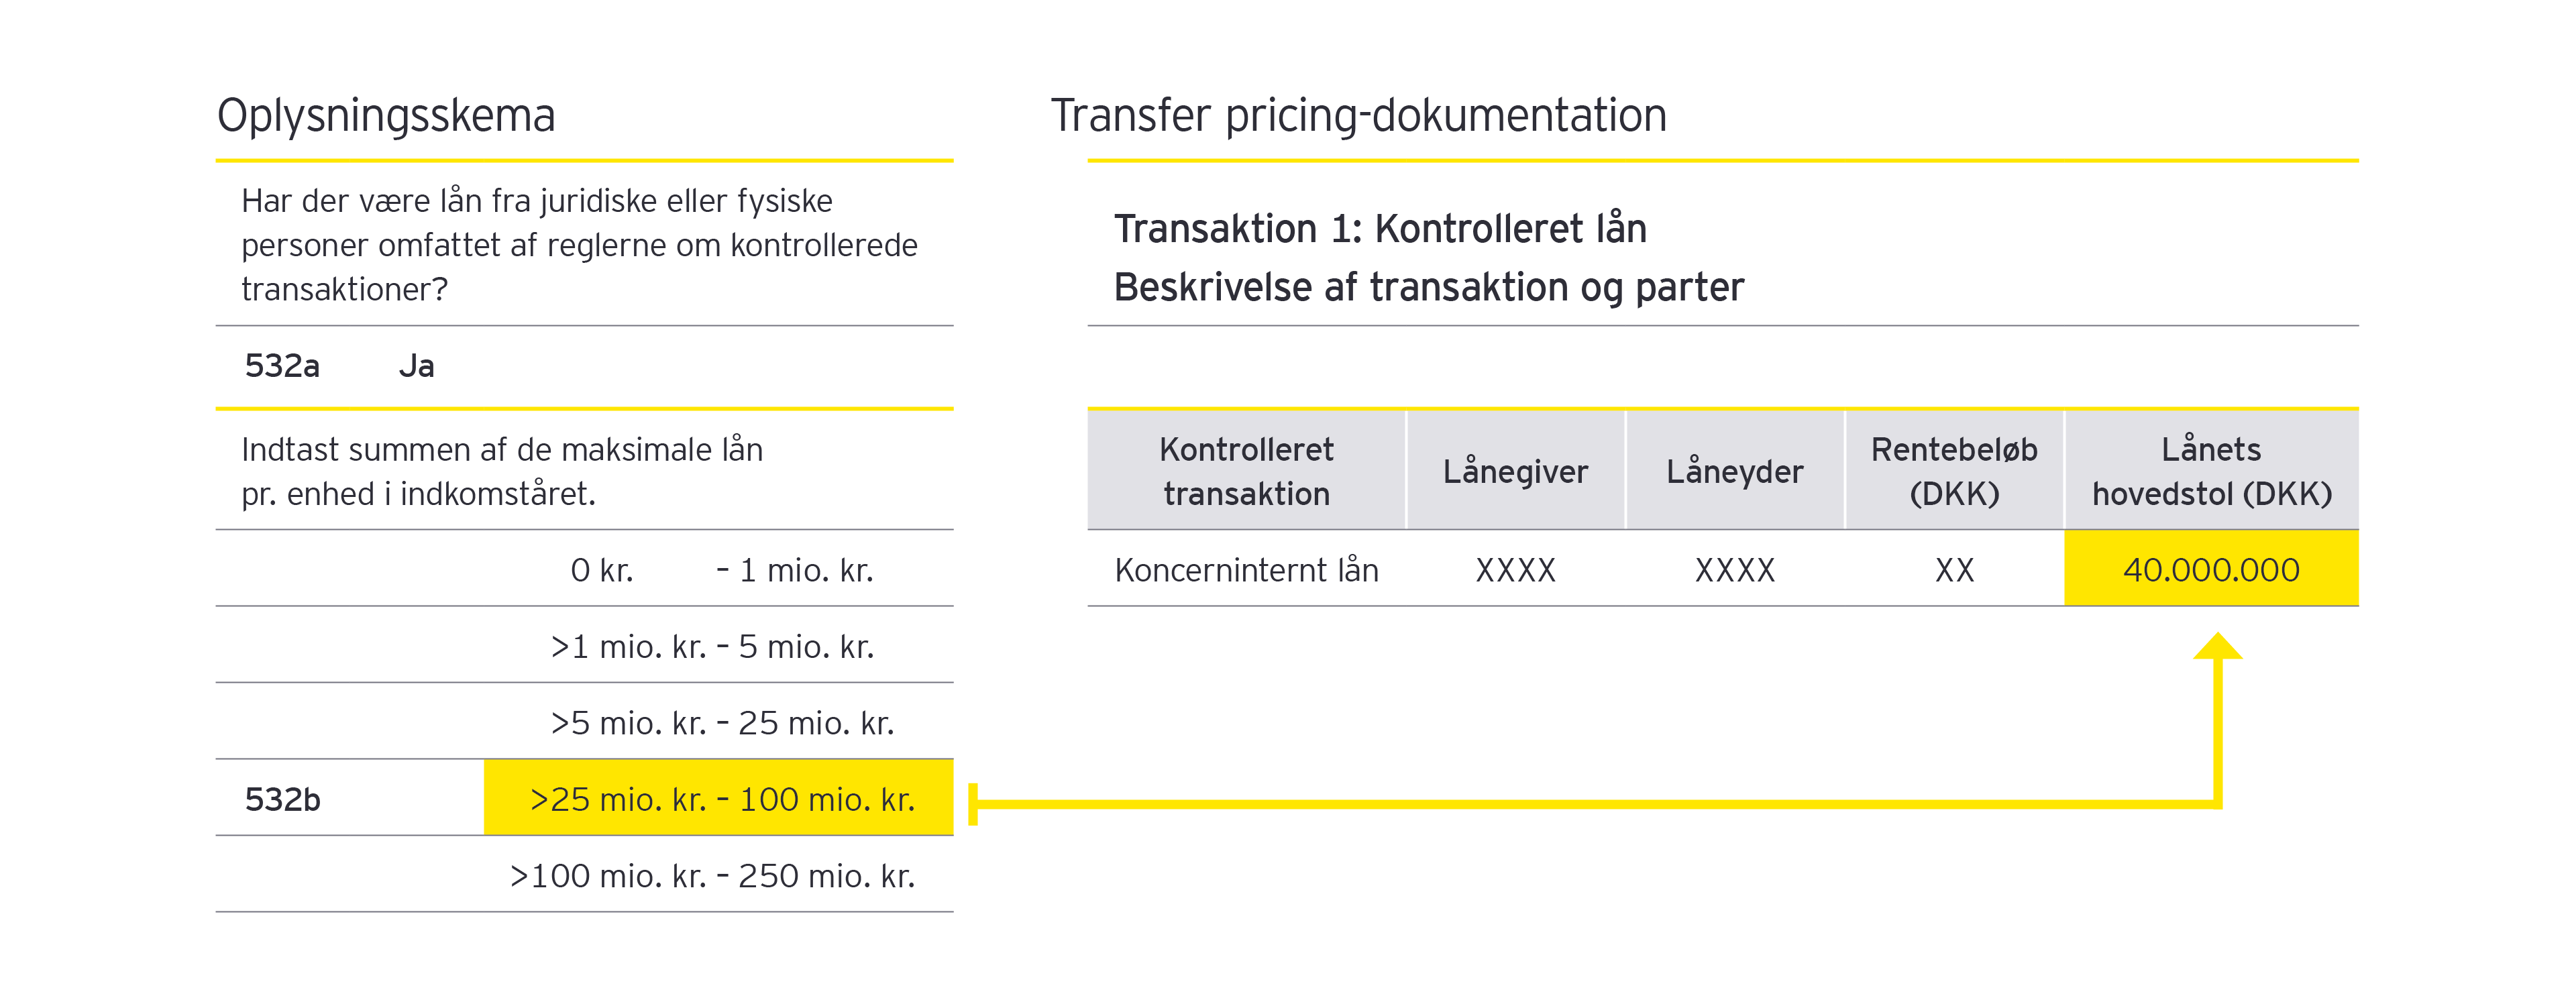 Illustration af sammenhængen mellem oplysningsskemaet og transfer pricing-dokumentationen 